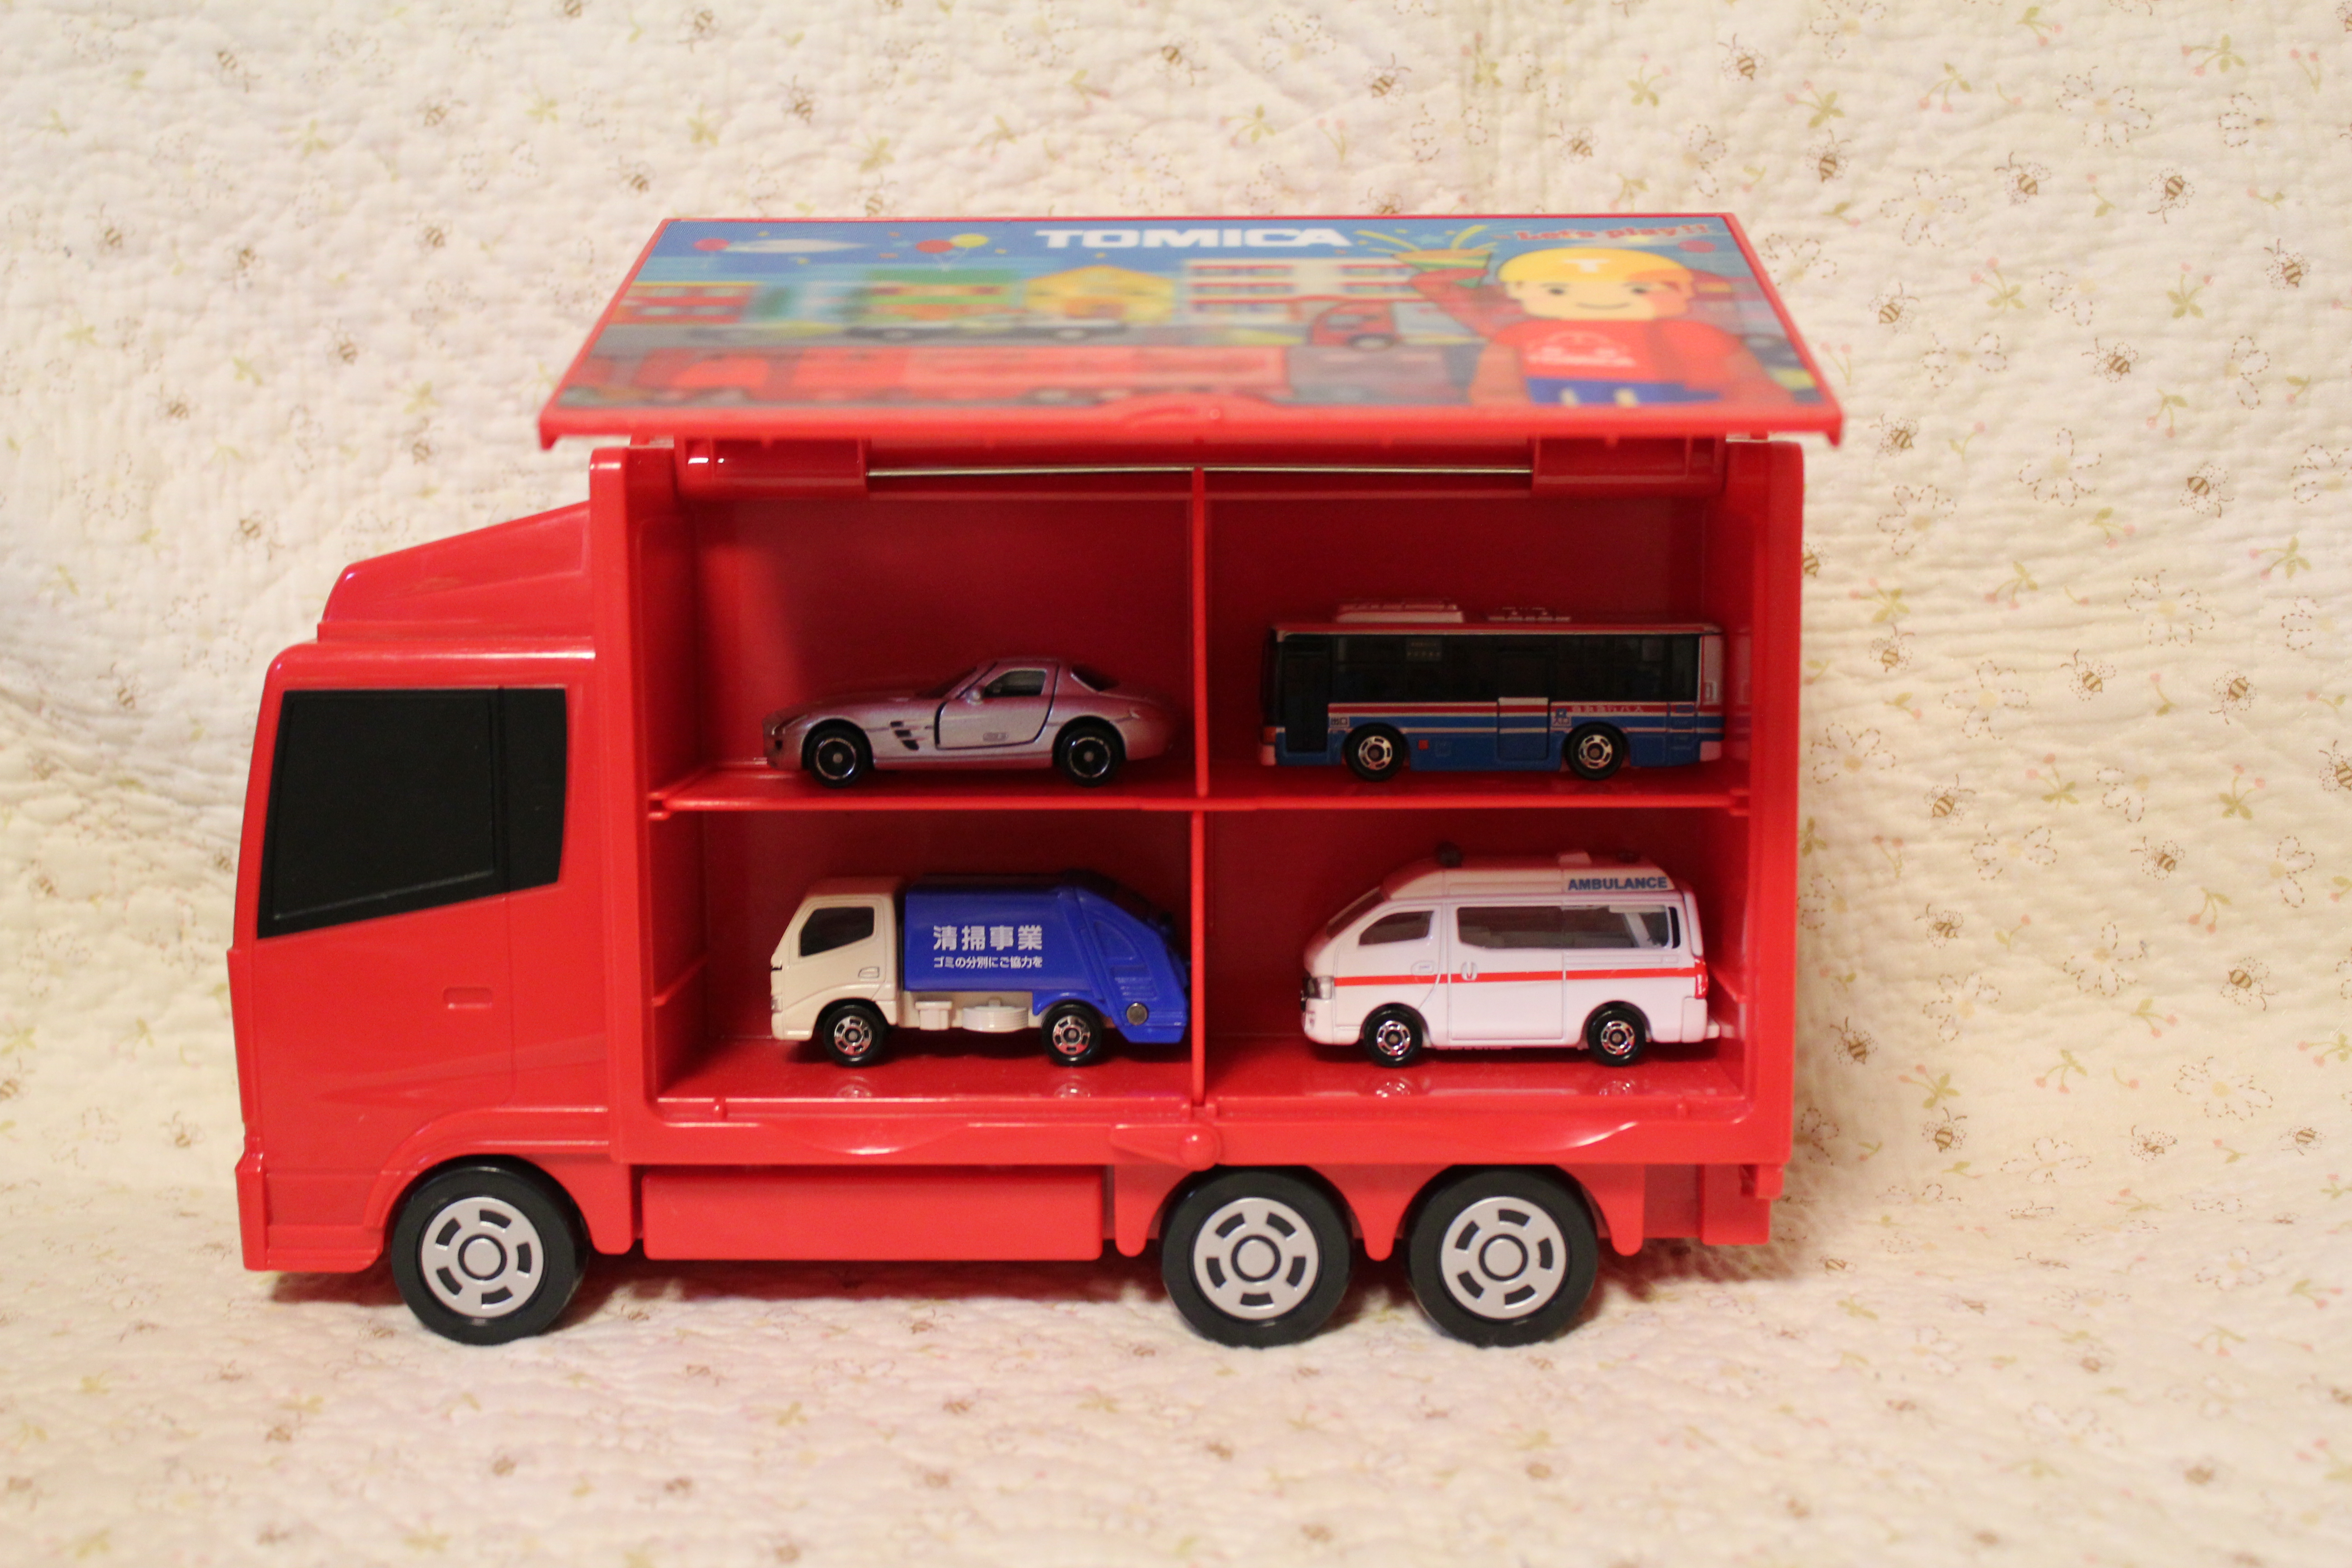 楽しみながらお片付けができるトミカトラックです 子育て世代のおもちゃ選び